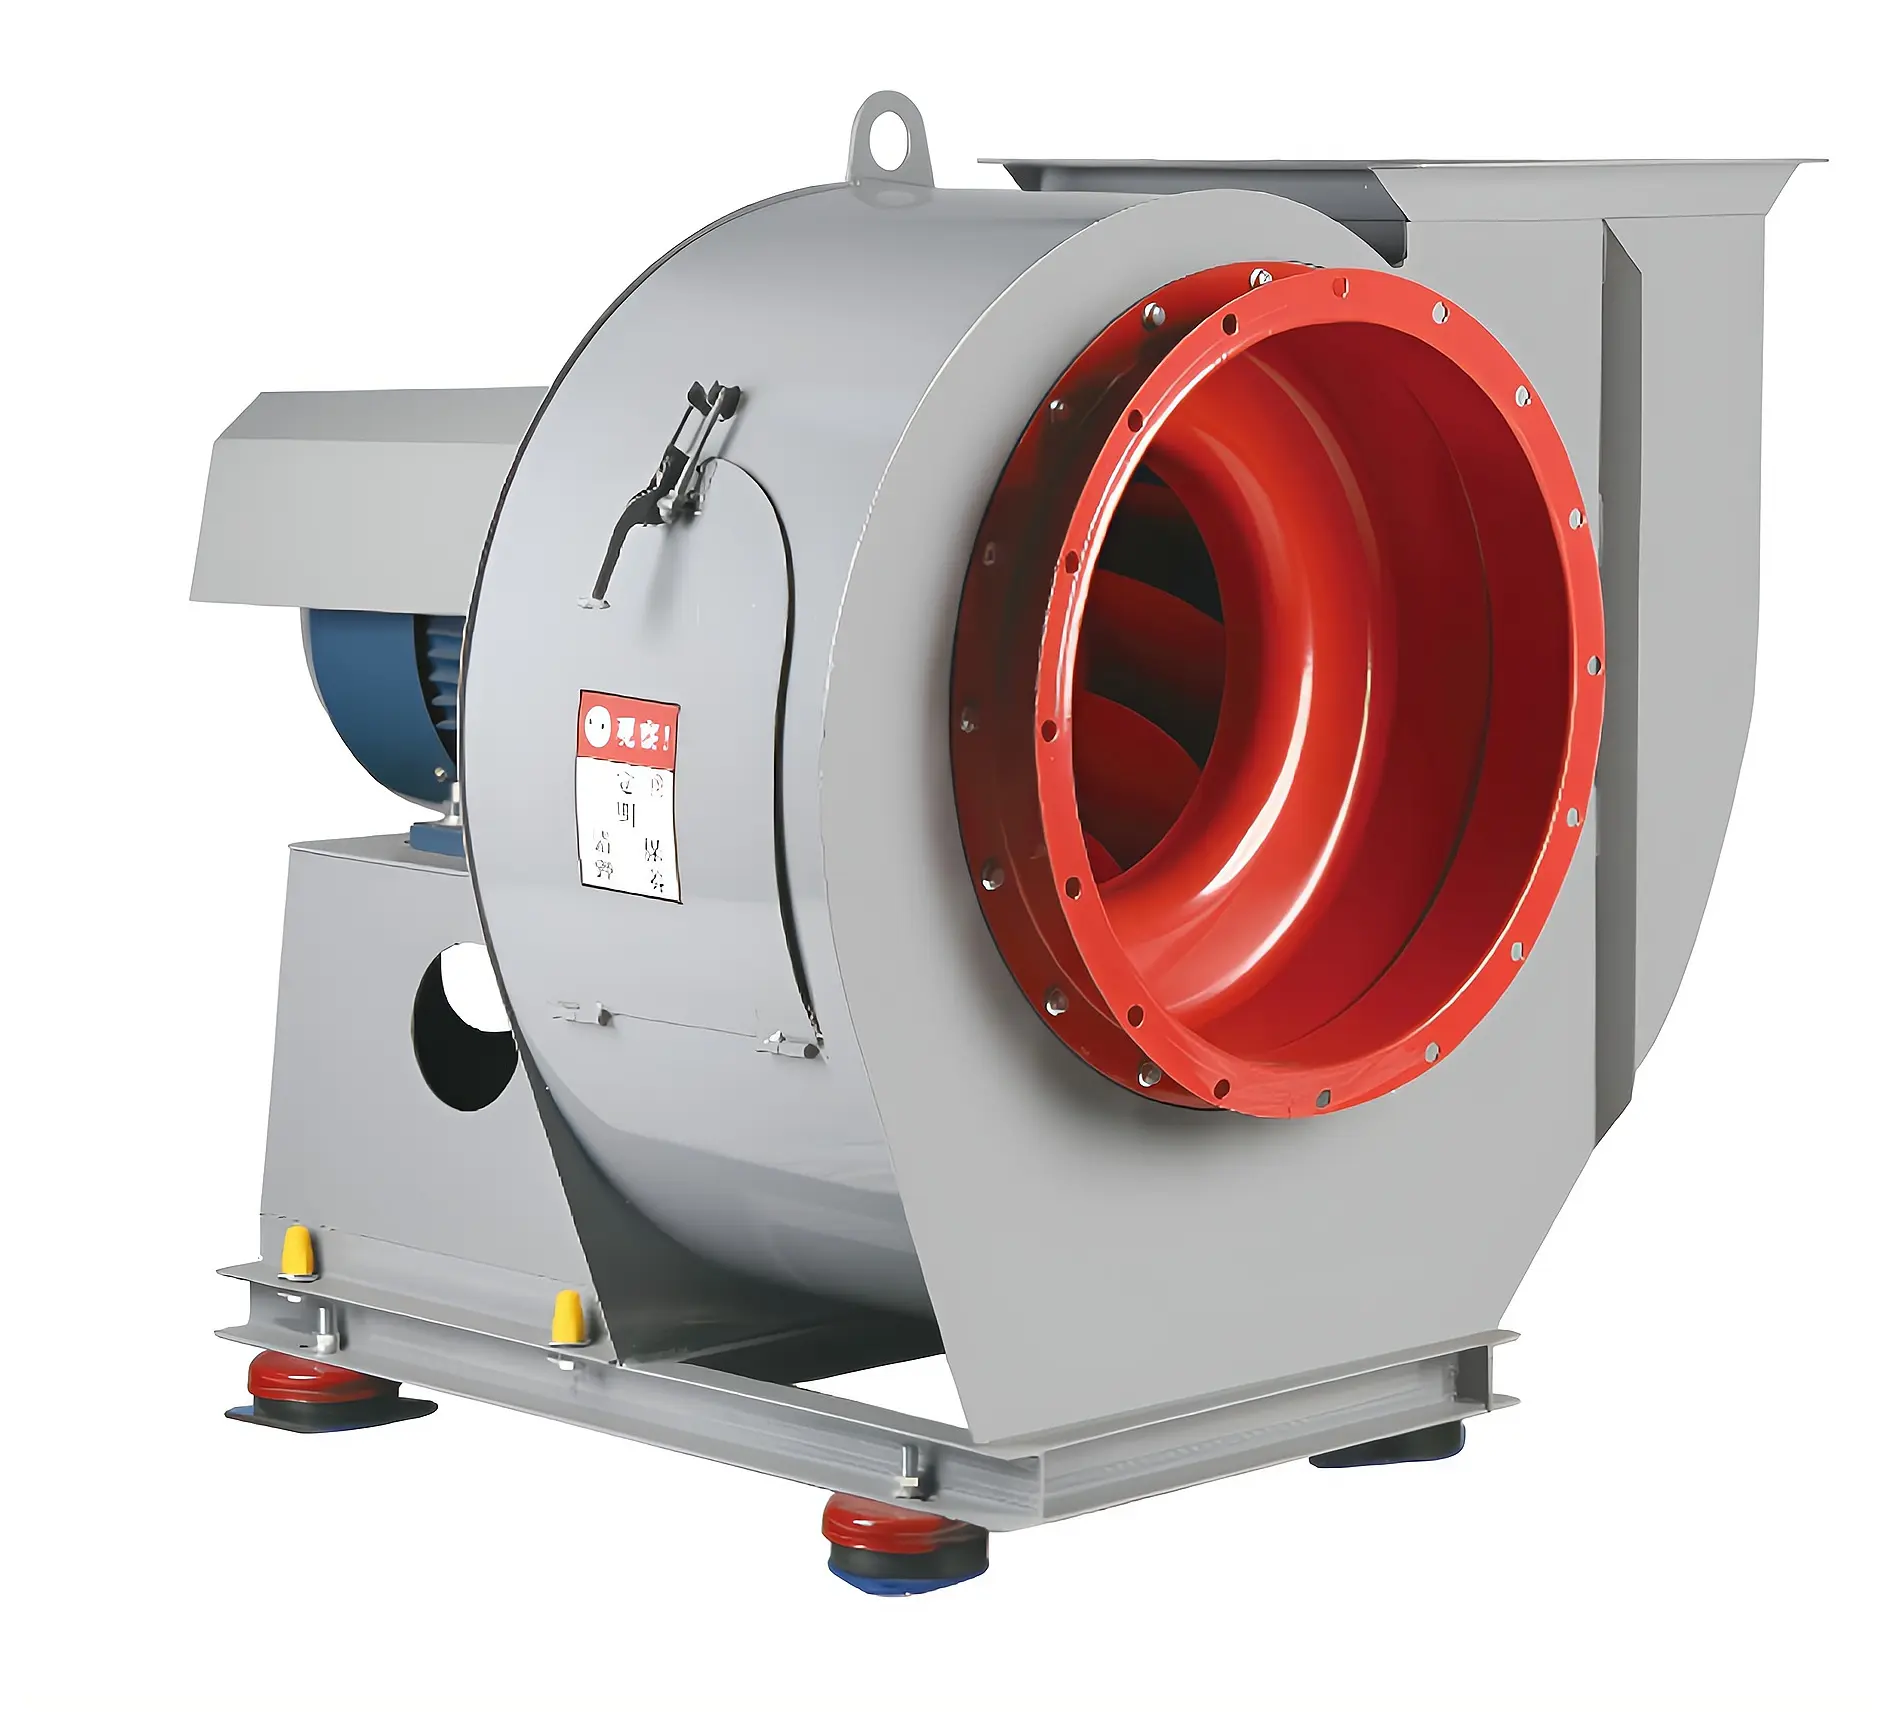 Ventilatore assiale Vs centrifugo ventilatore ad alta pressione aria ventilatore di scarico centrifugo